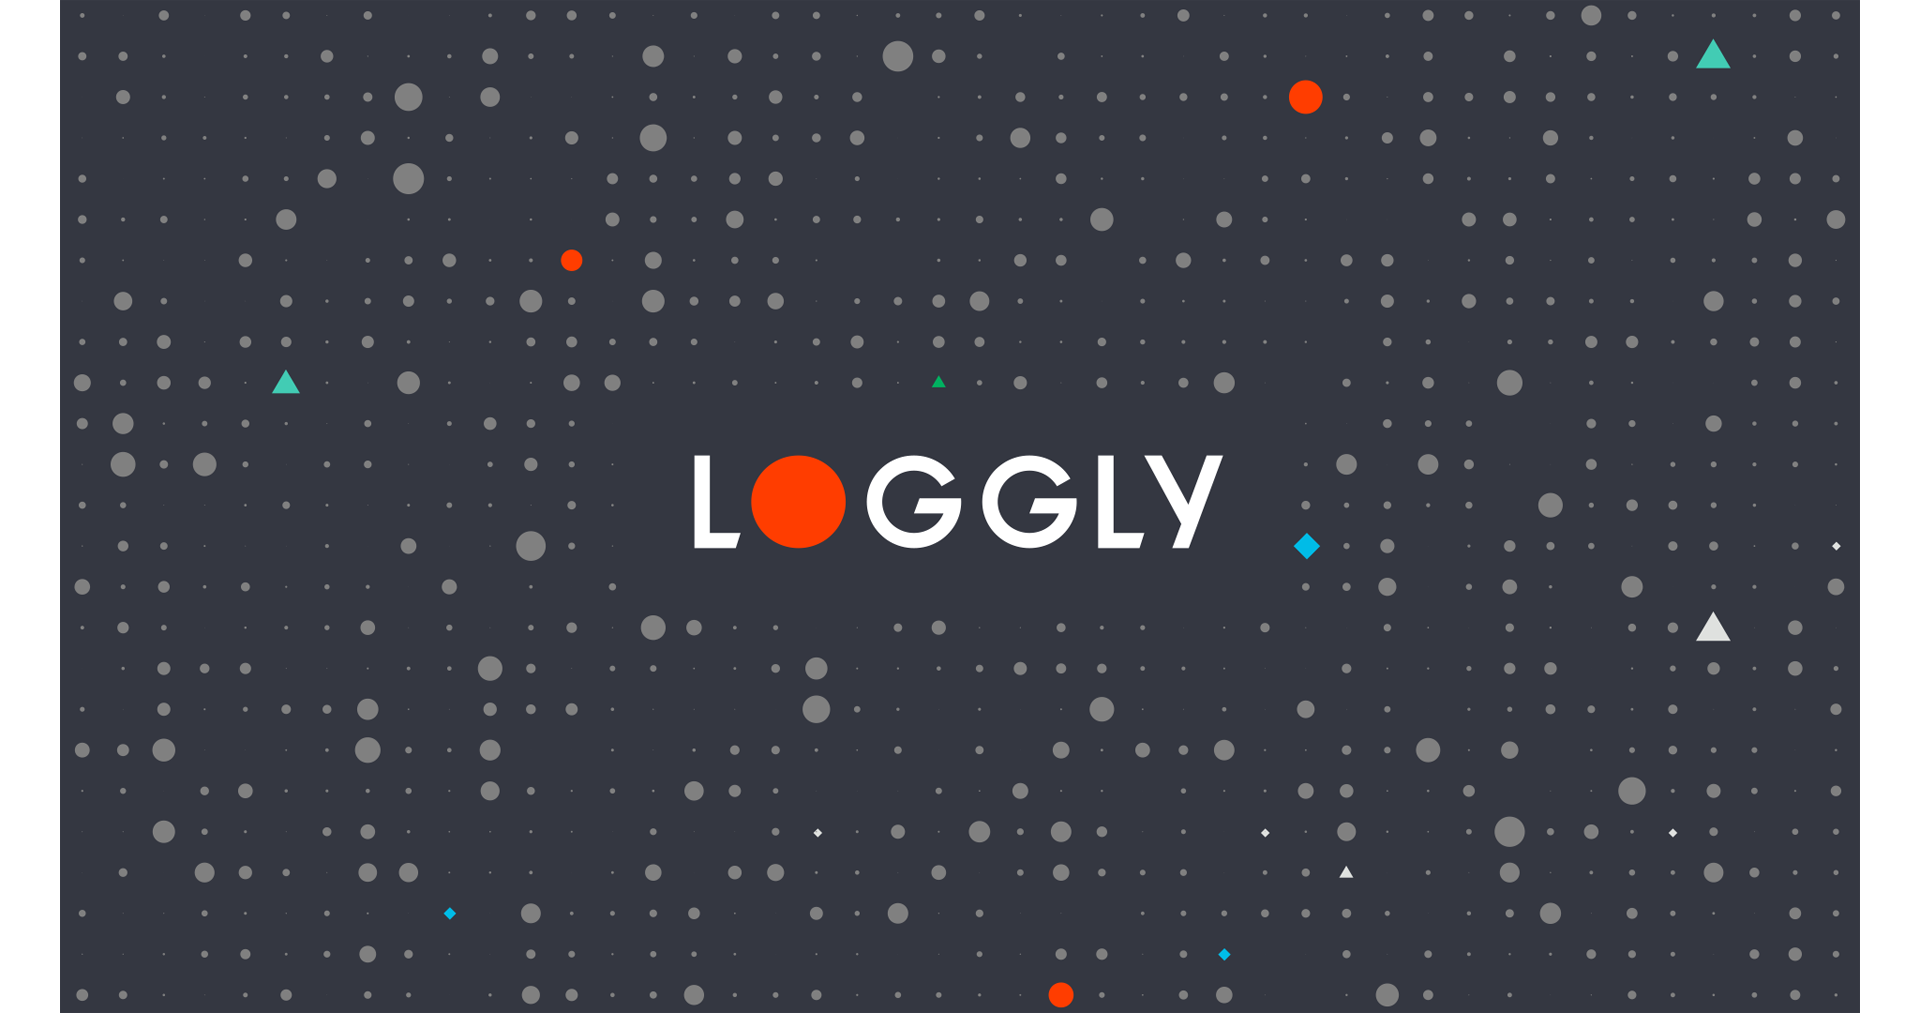 Loggly_logo_slide19201720